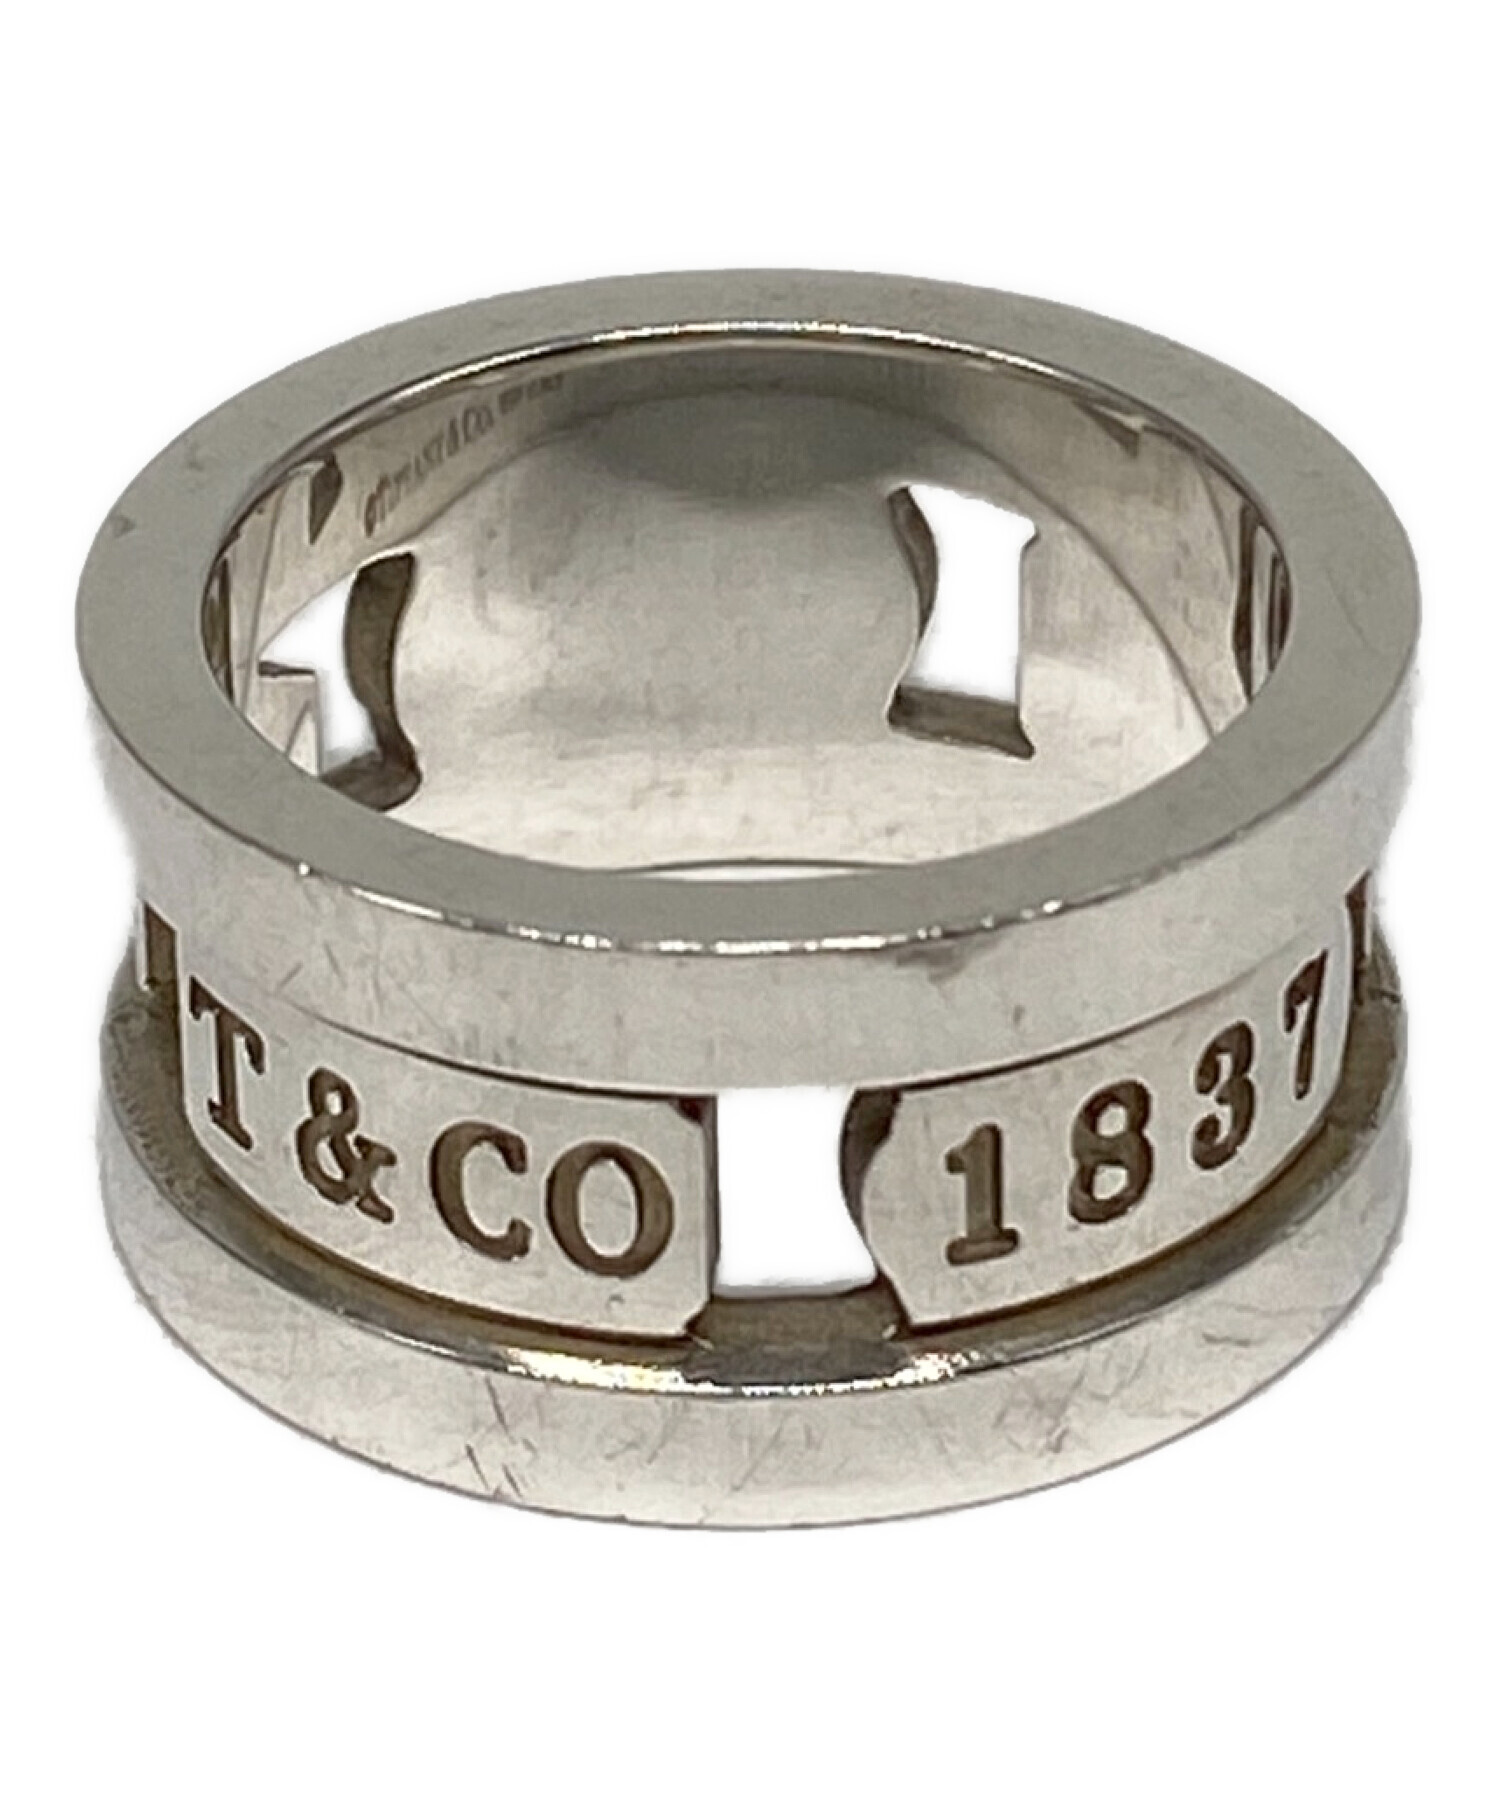 ティファニー リング・指輪 1837 エレメントリング   シルバー